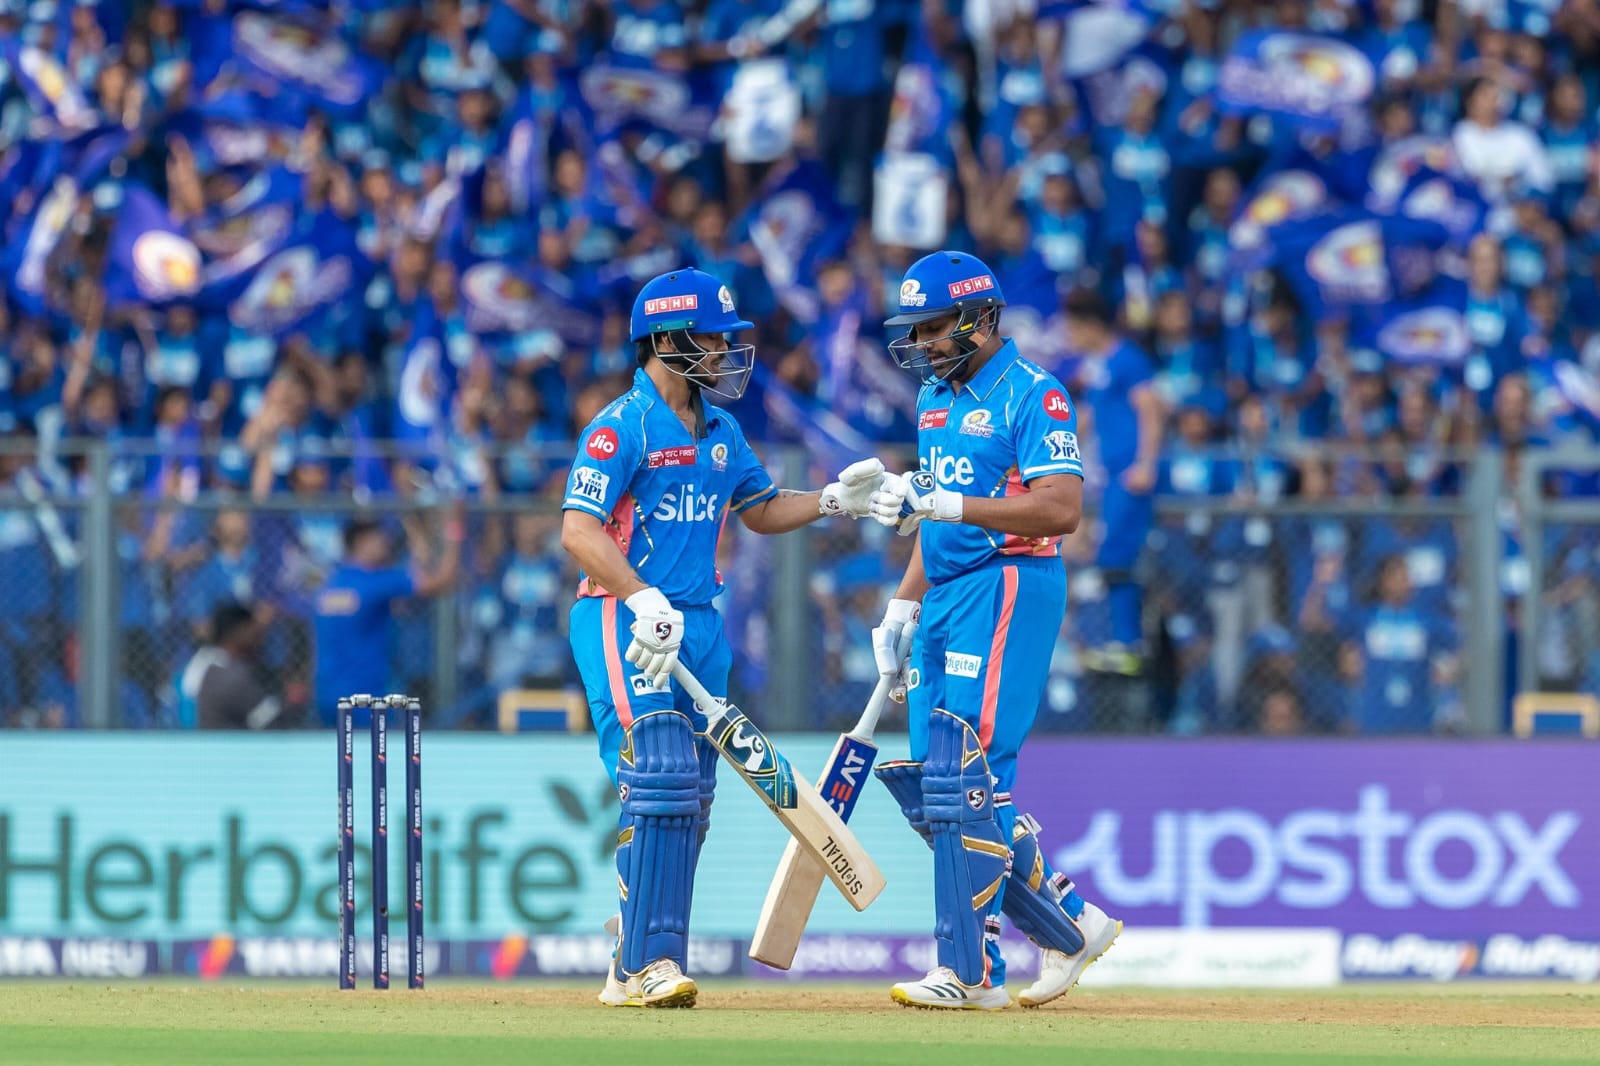 Video: वेंकटेश अय्यर बने अर्जुन तेंदुलकर के डेब्यू मैच के विलेन, एक ही ओवर में चौका-छक्का जड़ बताया कौन है मैदान का असली राजा 